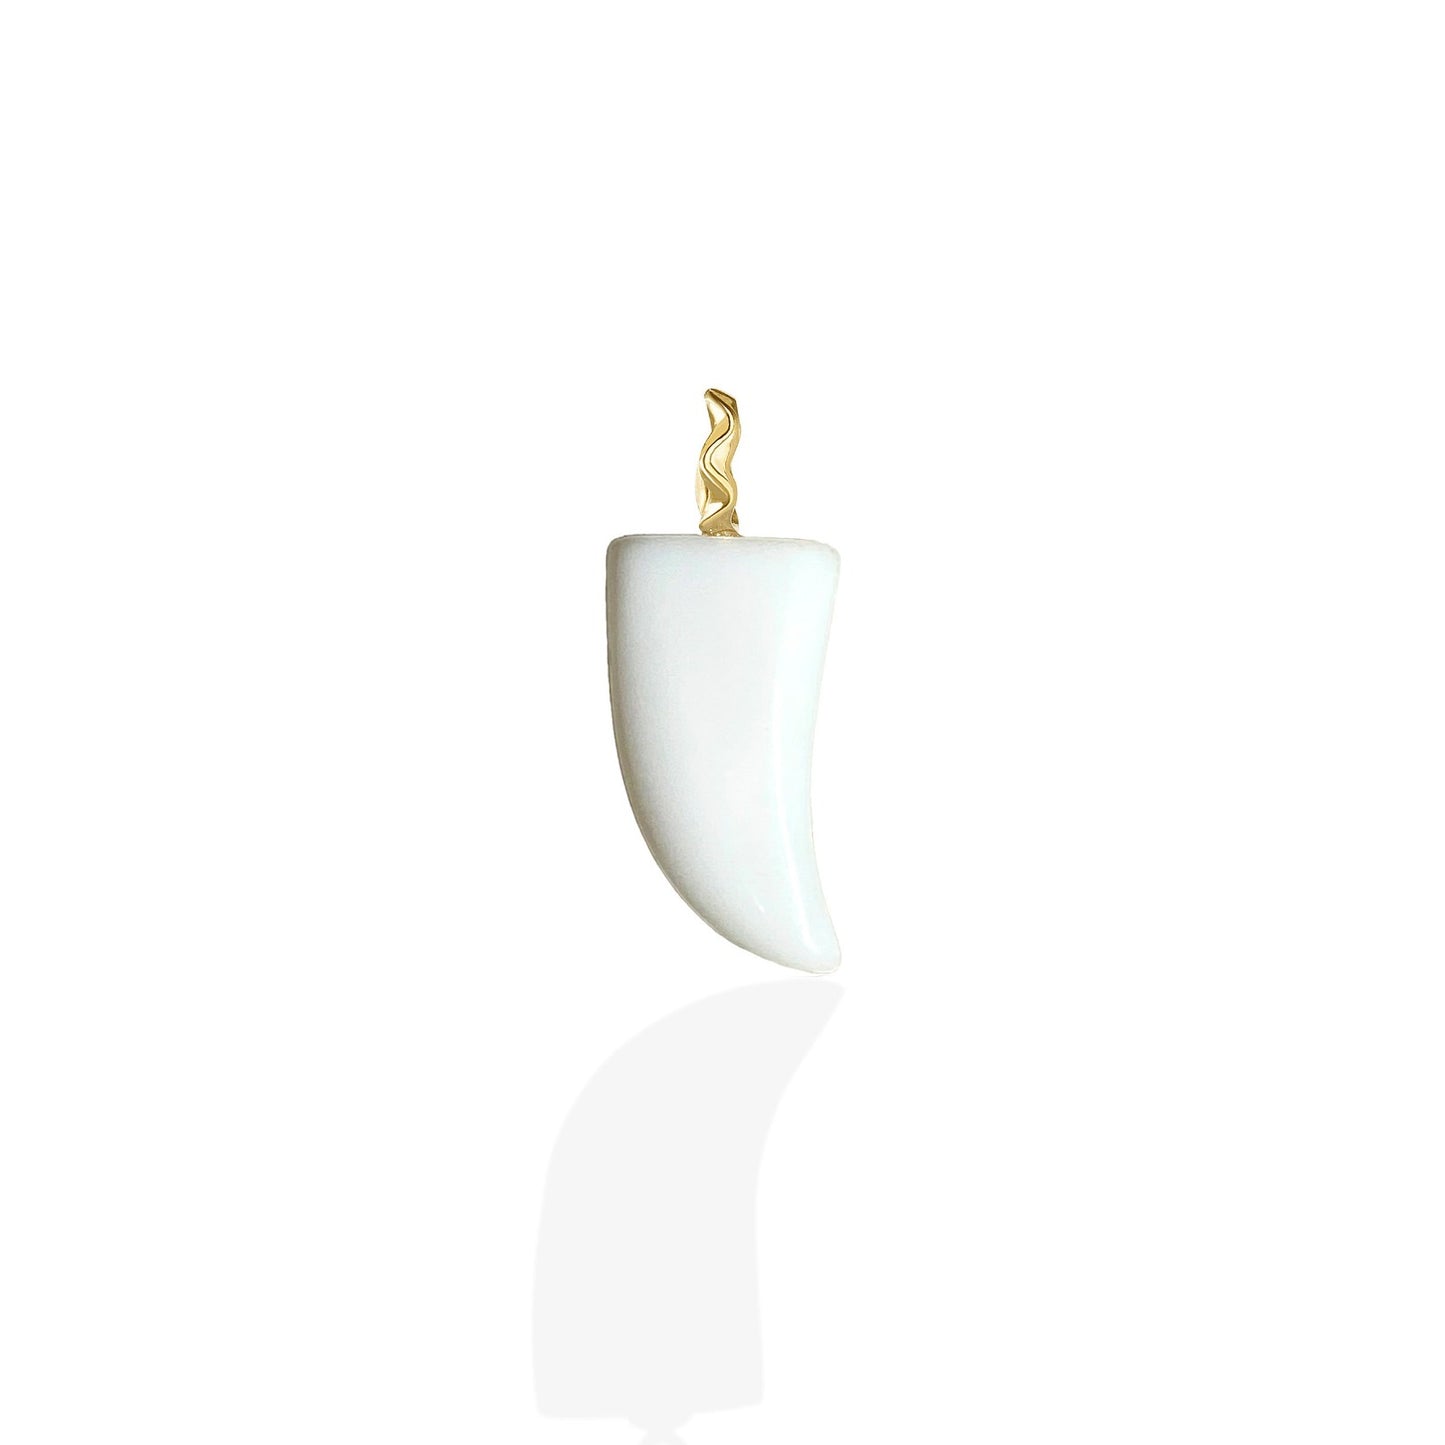 White agate horn charm.